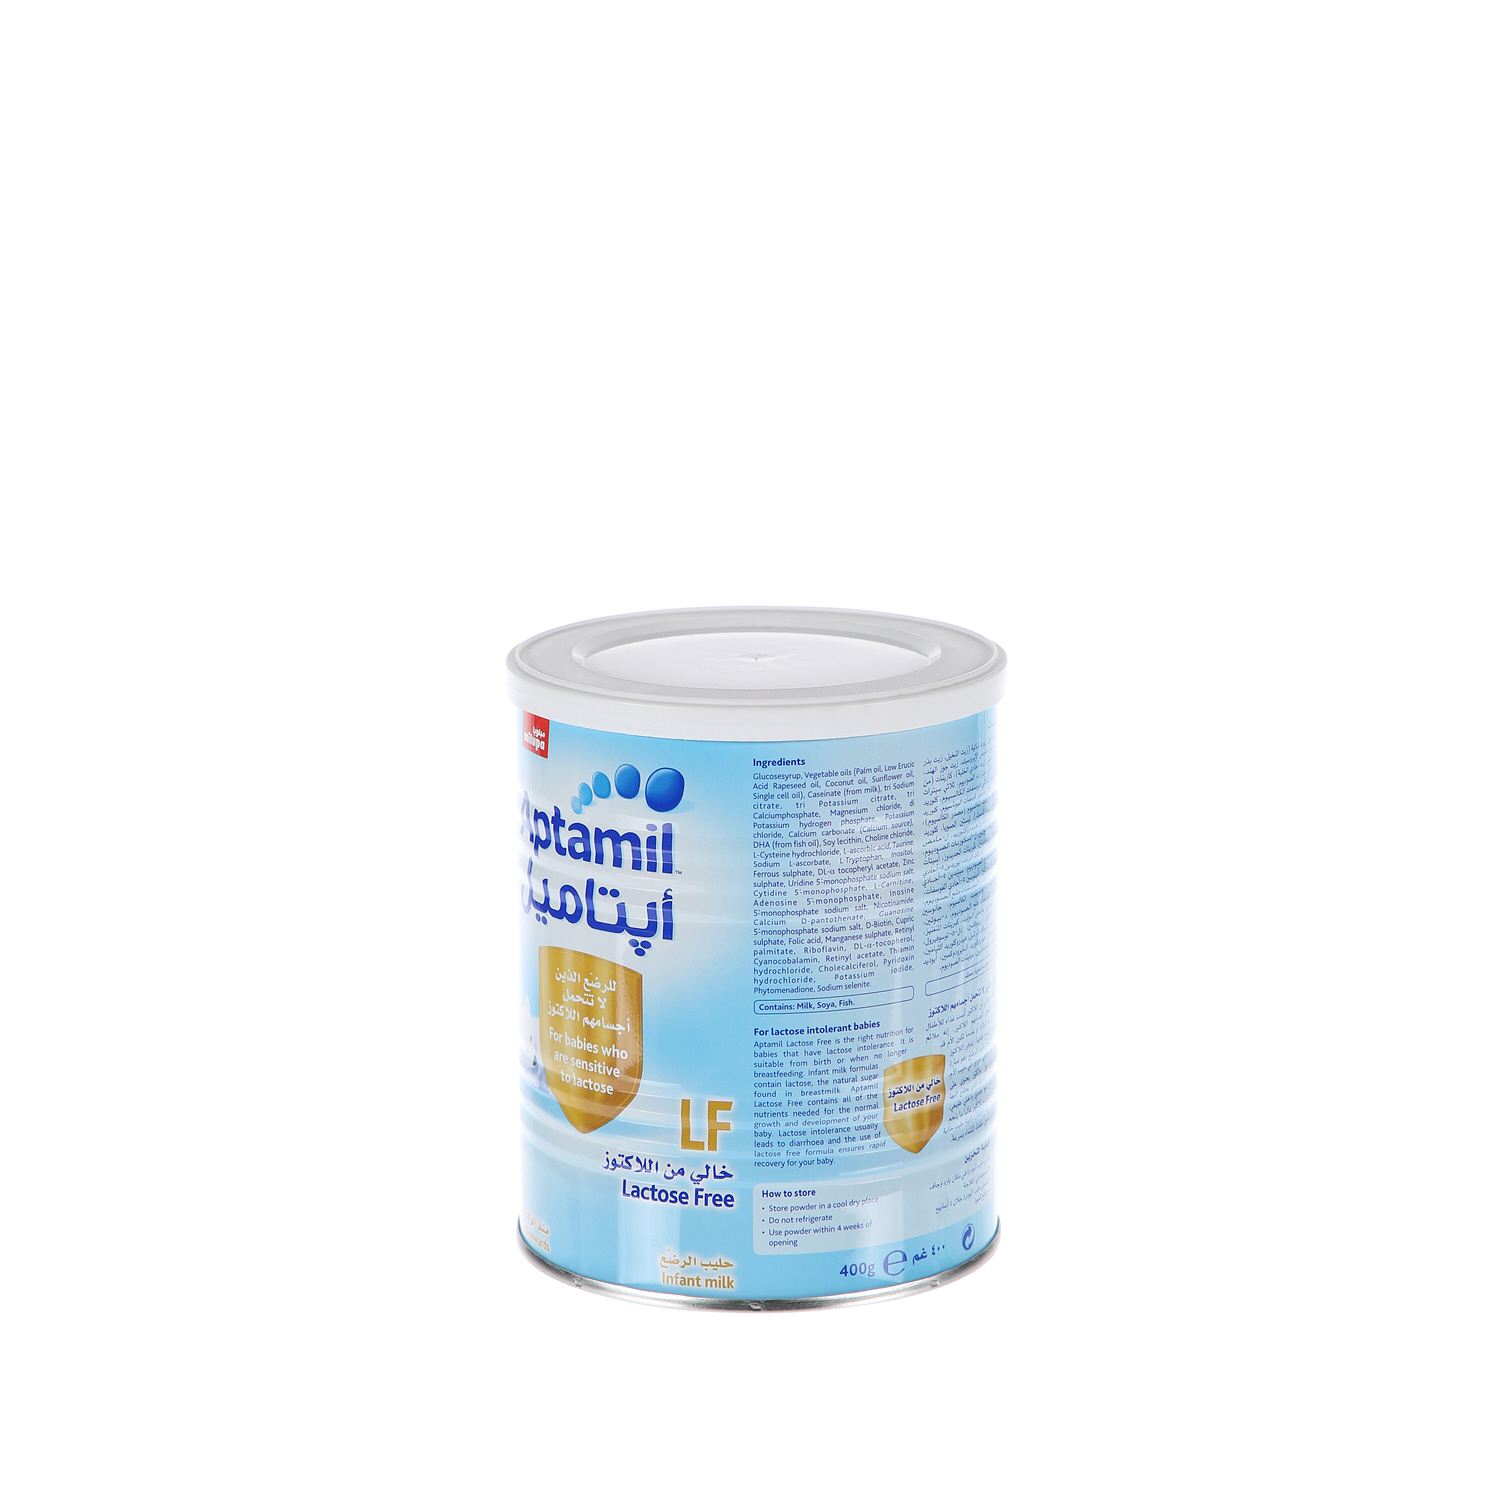 Milupa Aptamil Lactose Free 400 g